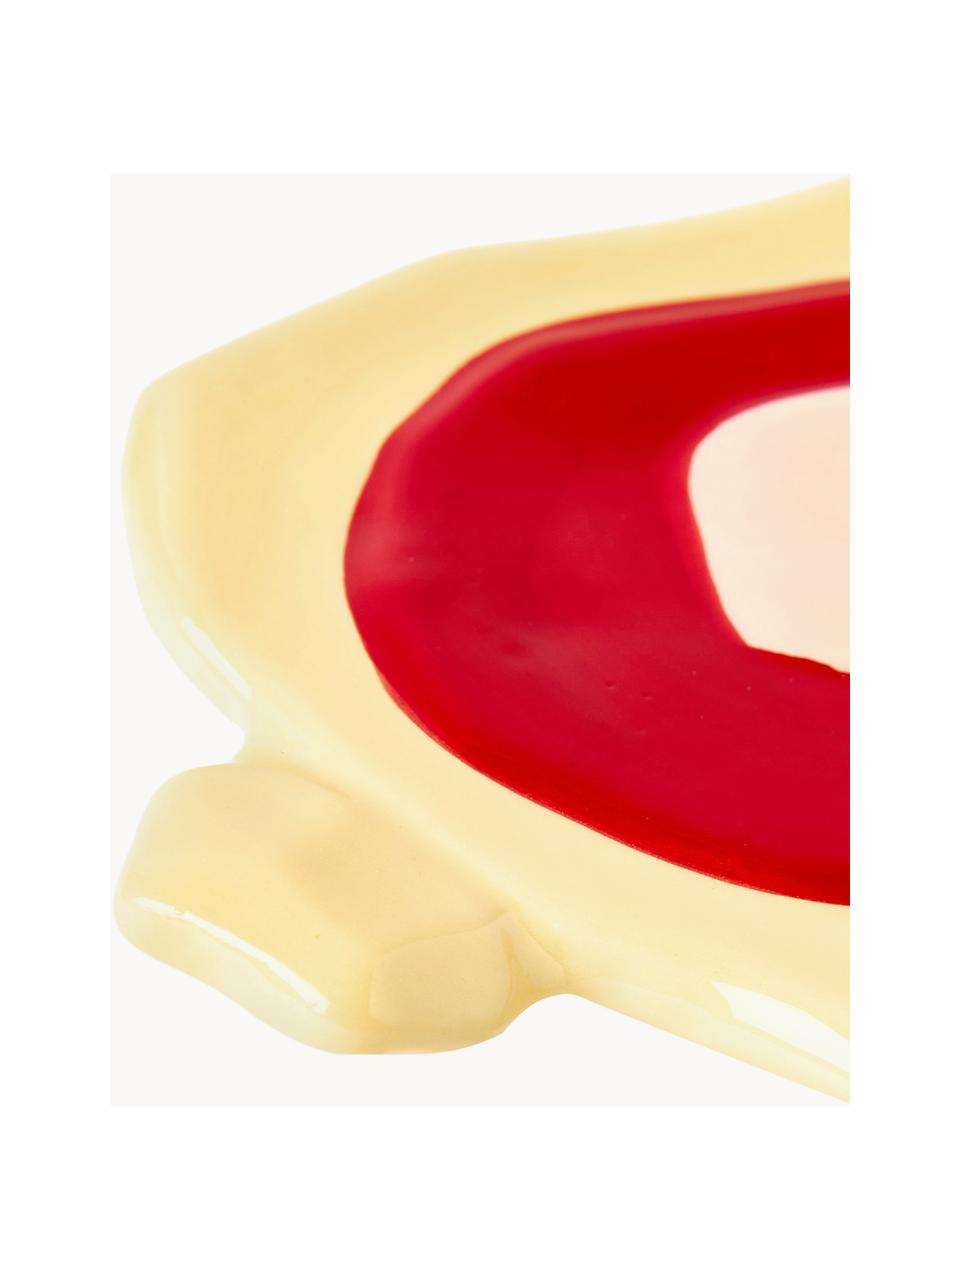 Ručně malovaný porcelánový servírovací talíř Chunky, 19 x 12 cm, Porcelán, Žlutá, oranžová, červená, růžová, Š 19 cm, H 12 cm